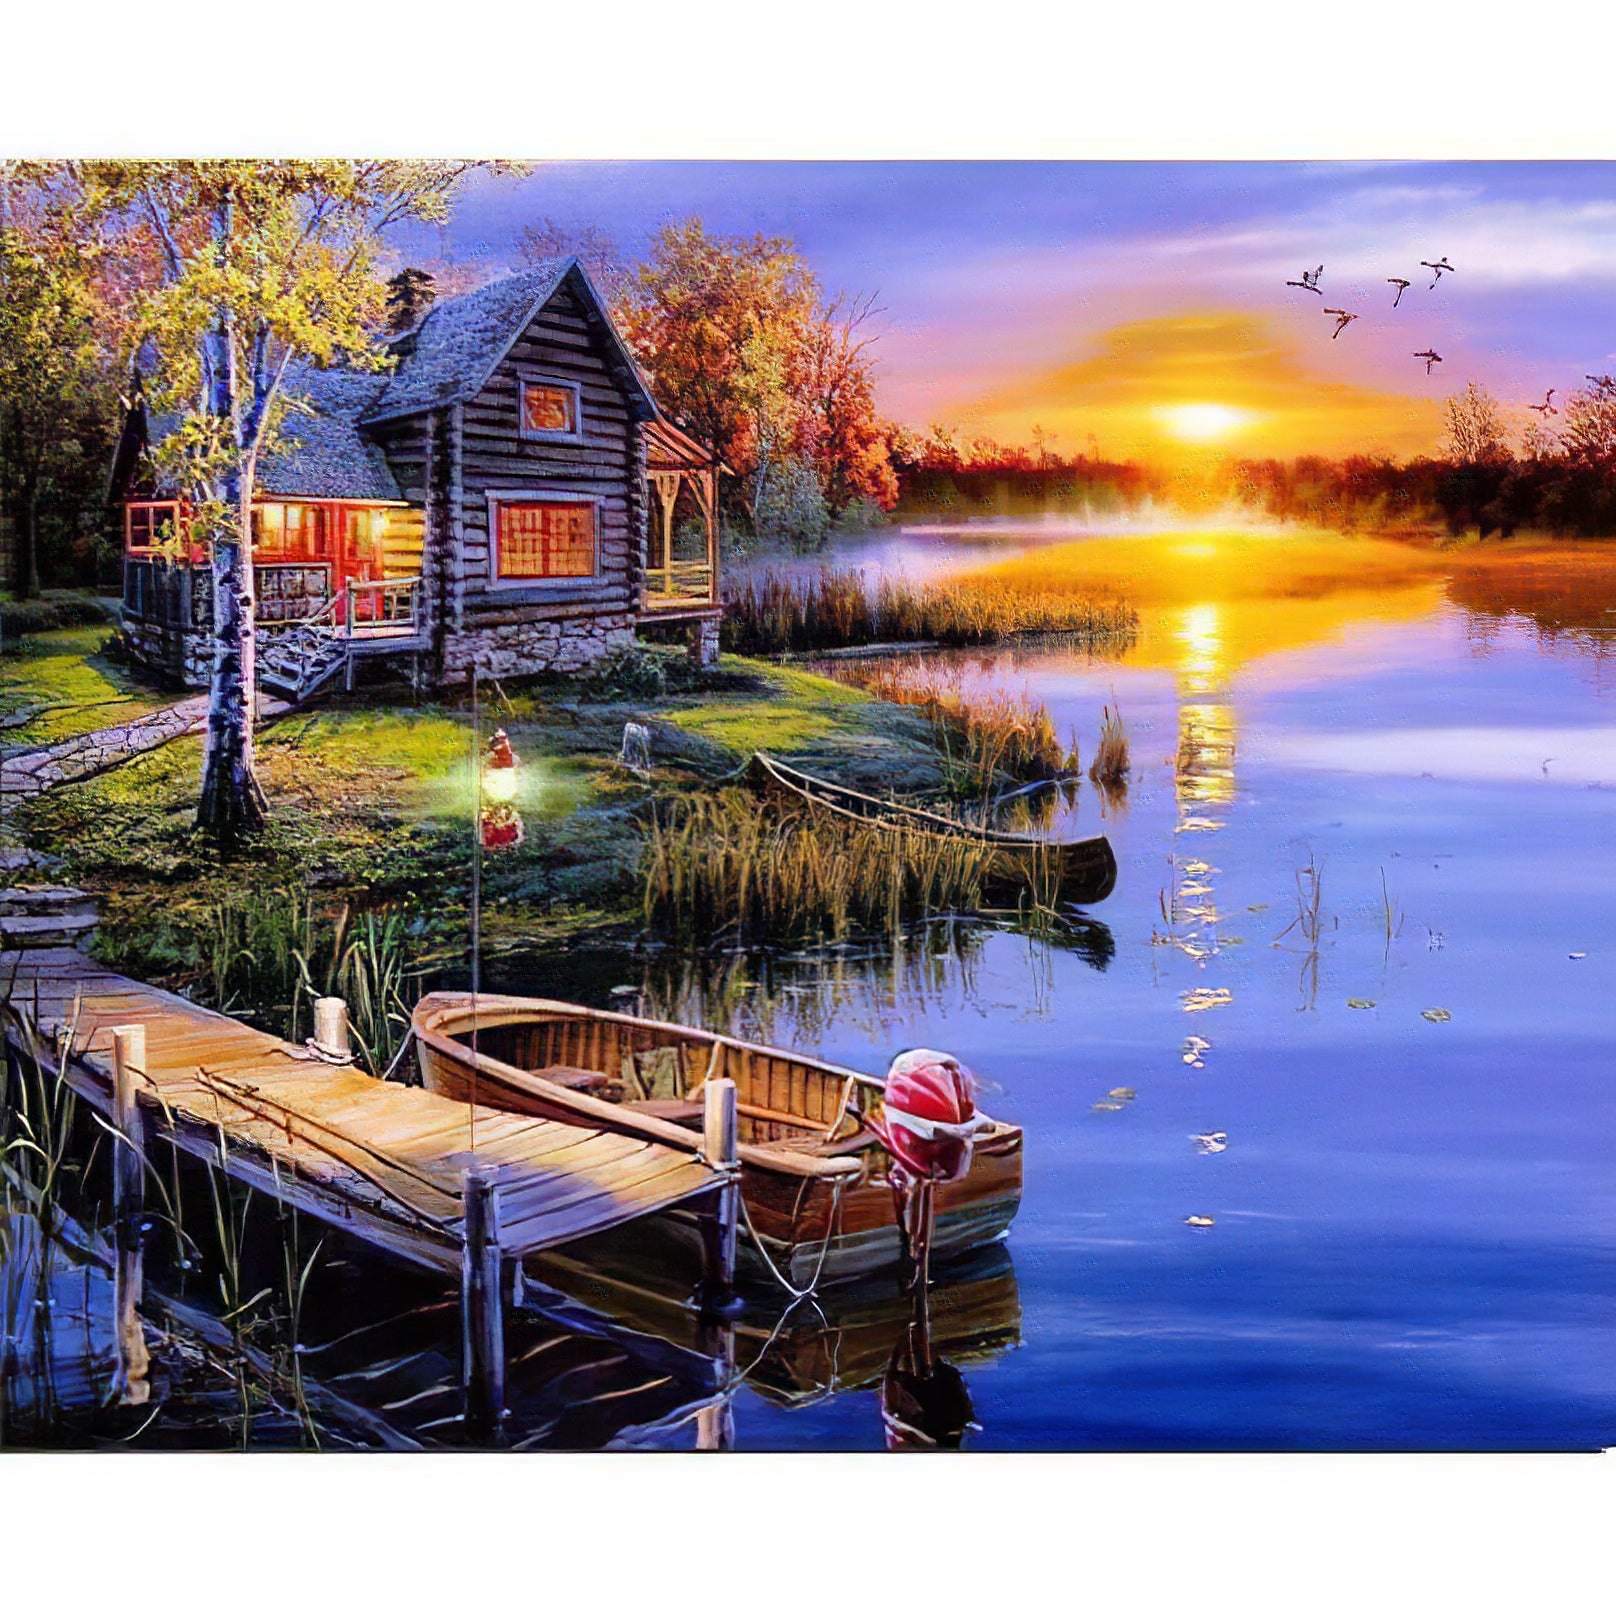 Une Maison au Bord d'un Lac au Coucher du Soleil